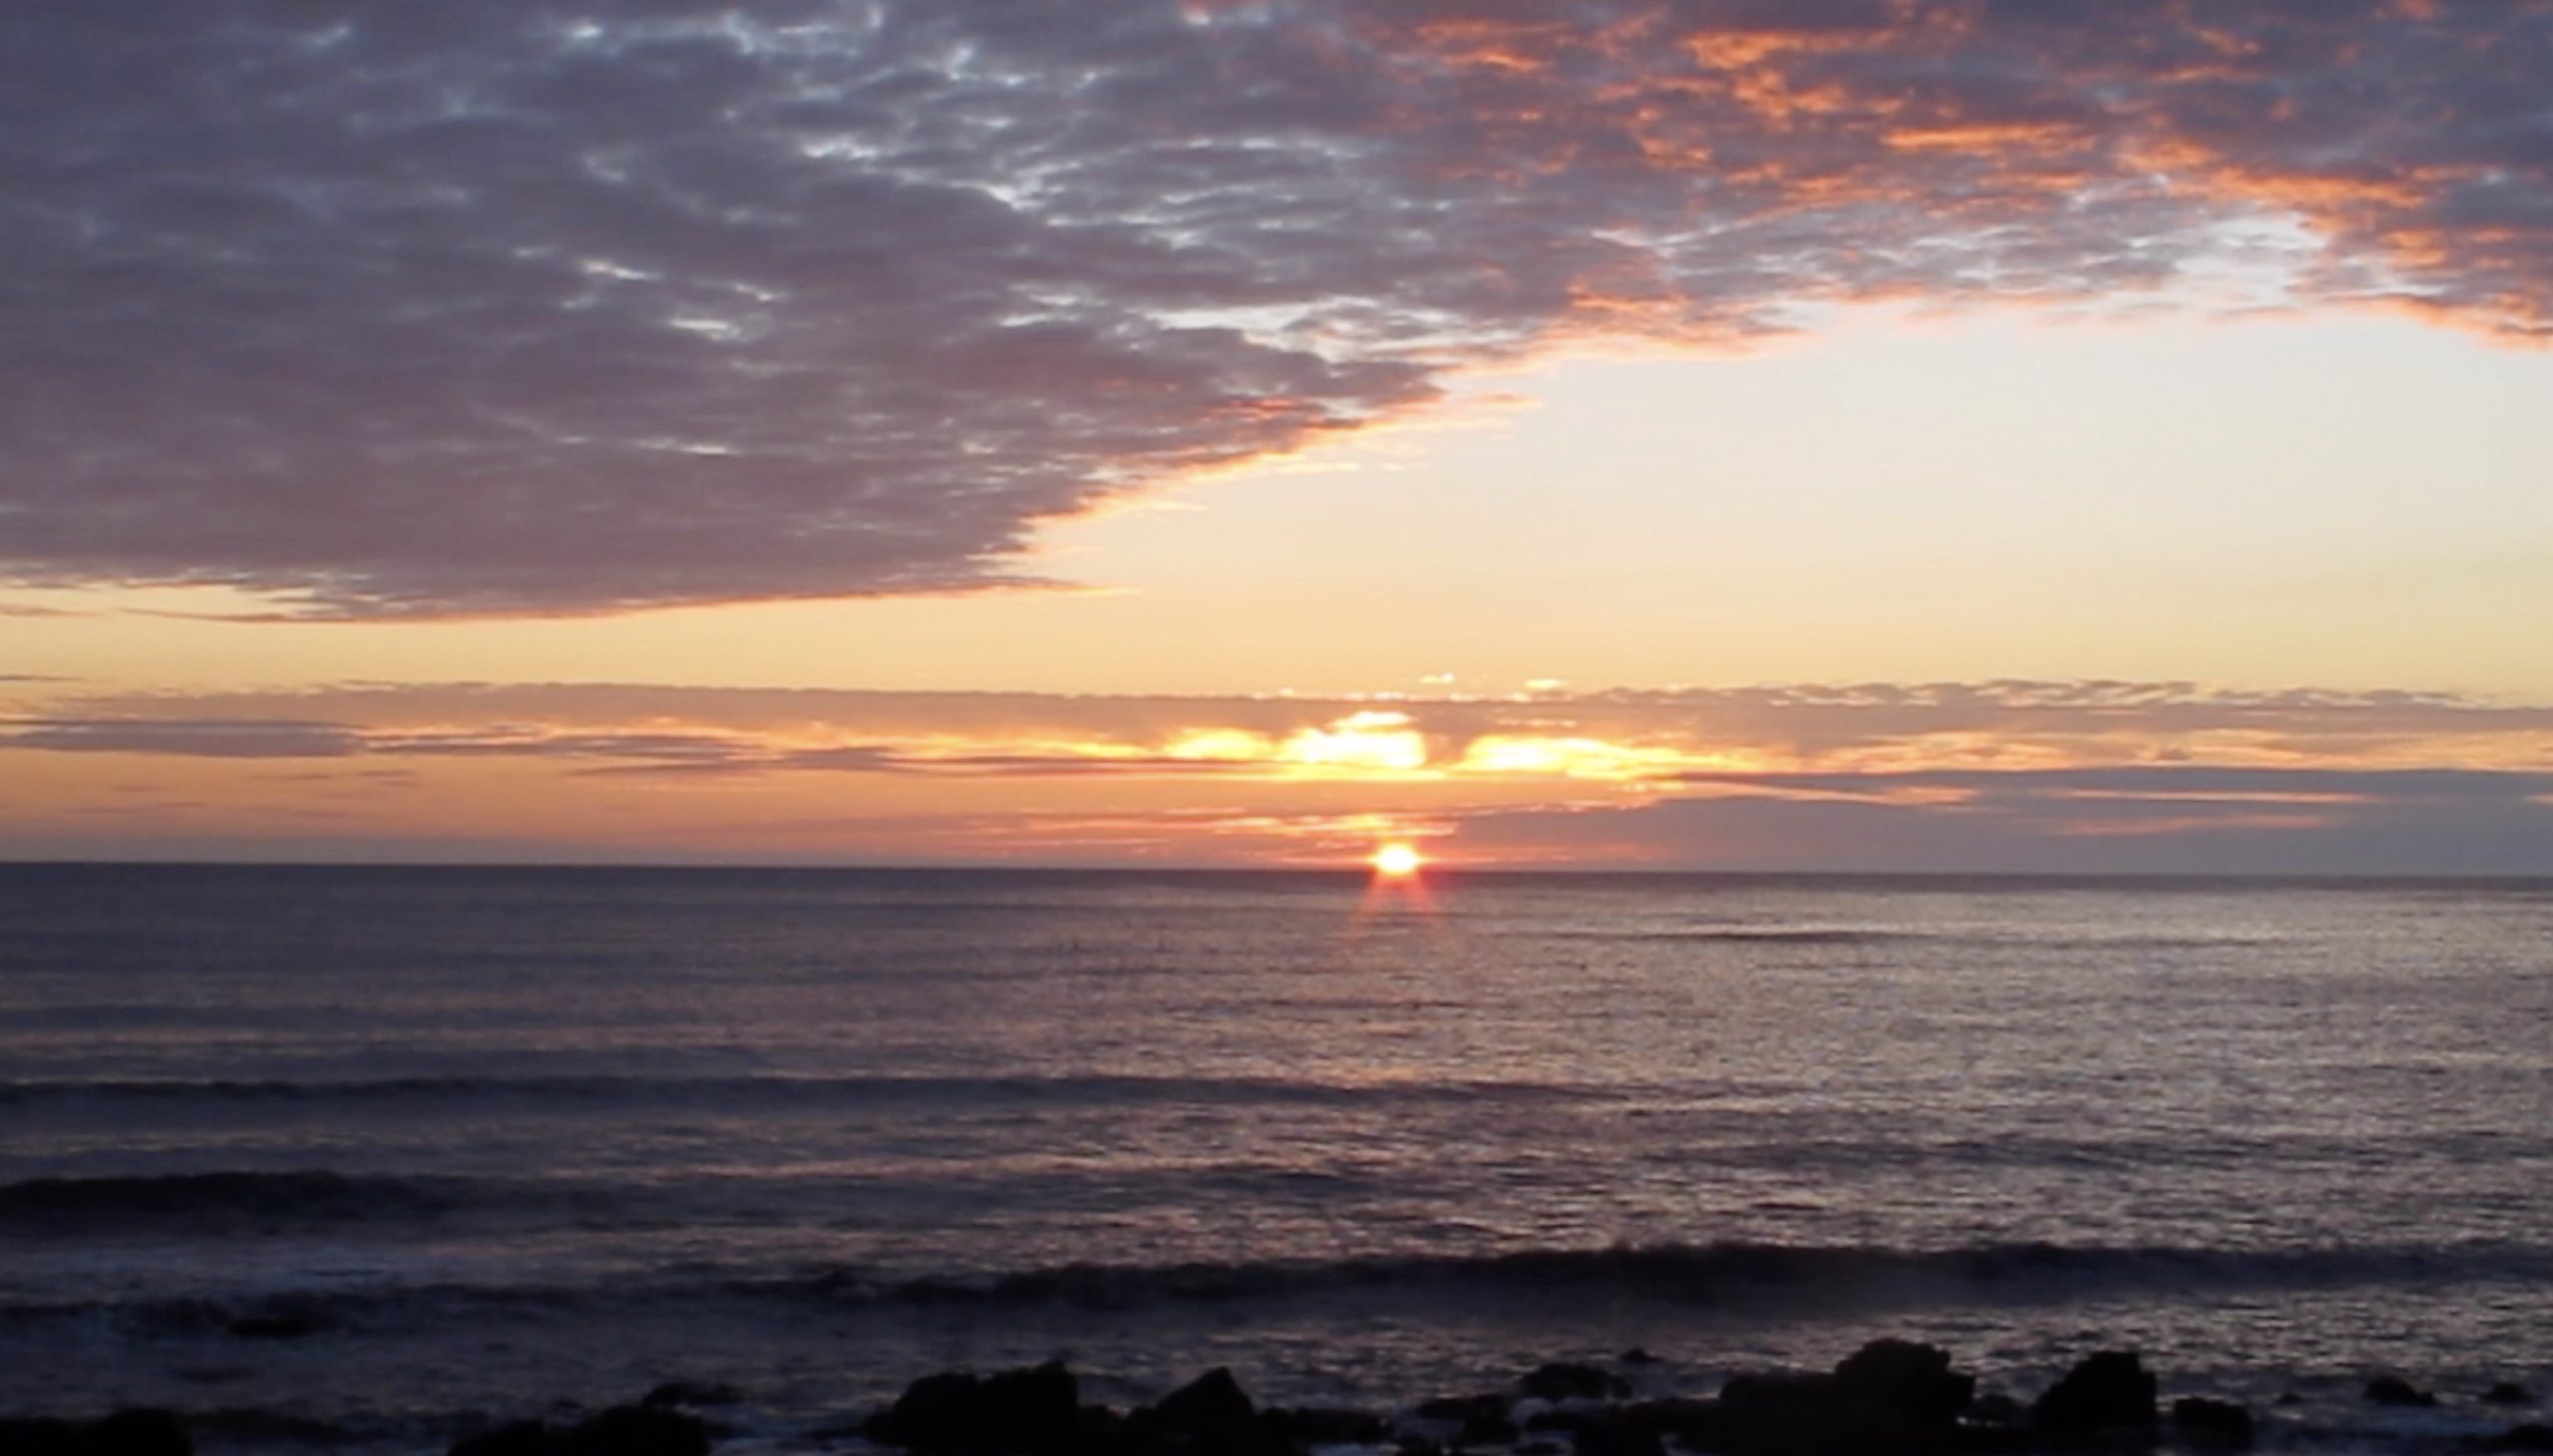 Sunrise on the Northumberland coast